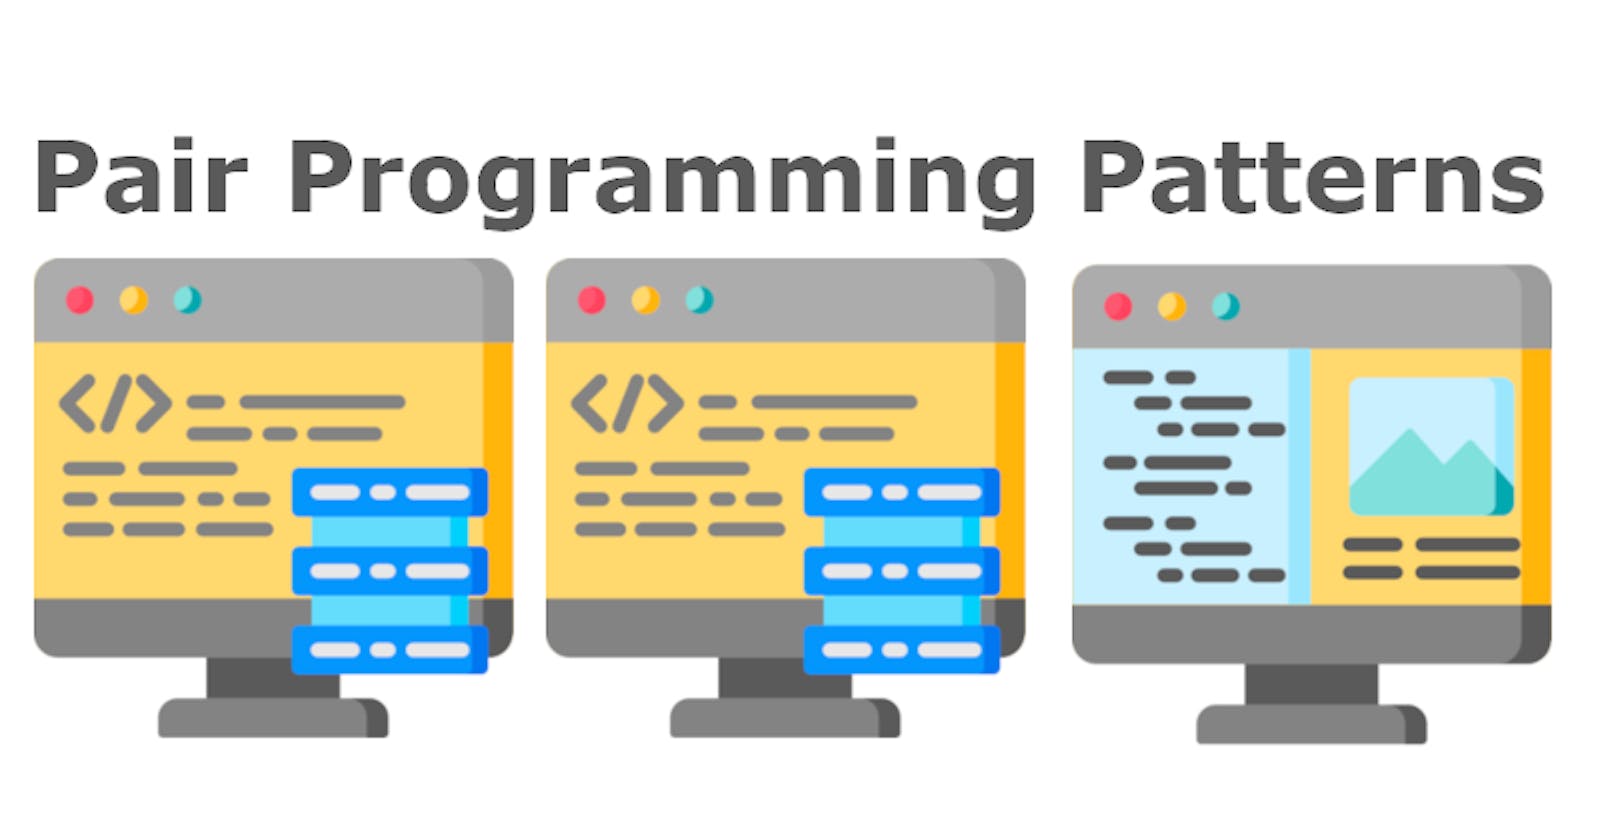 Pair Programming Patterns